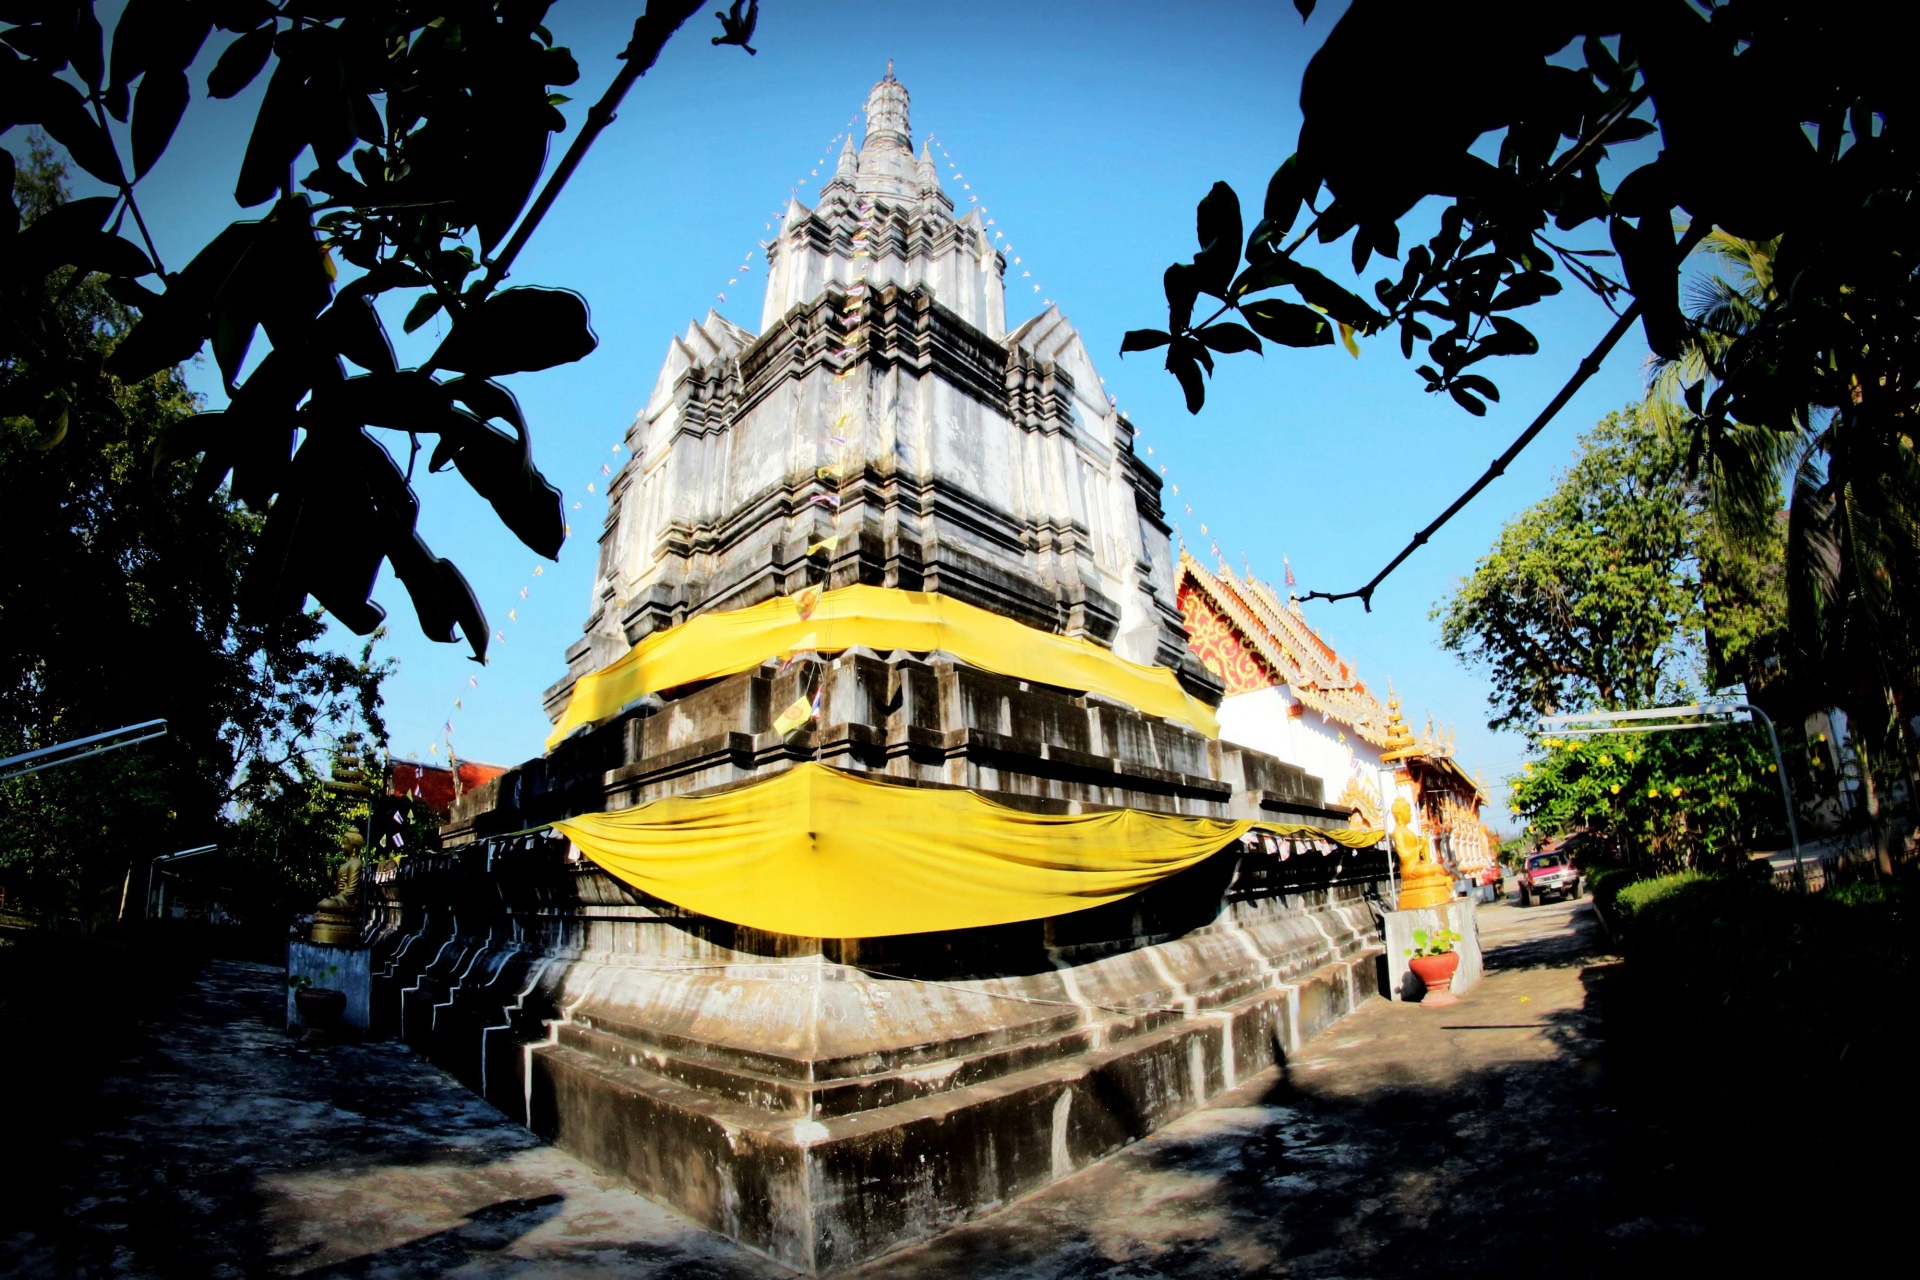 Thaise tempel Wat Phra die suan bruint,